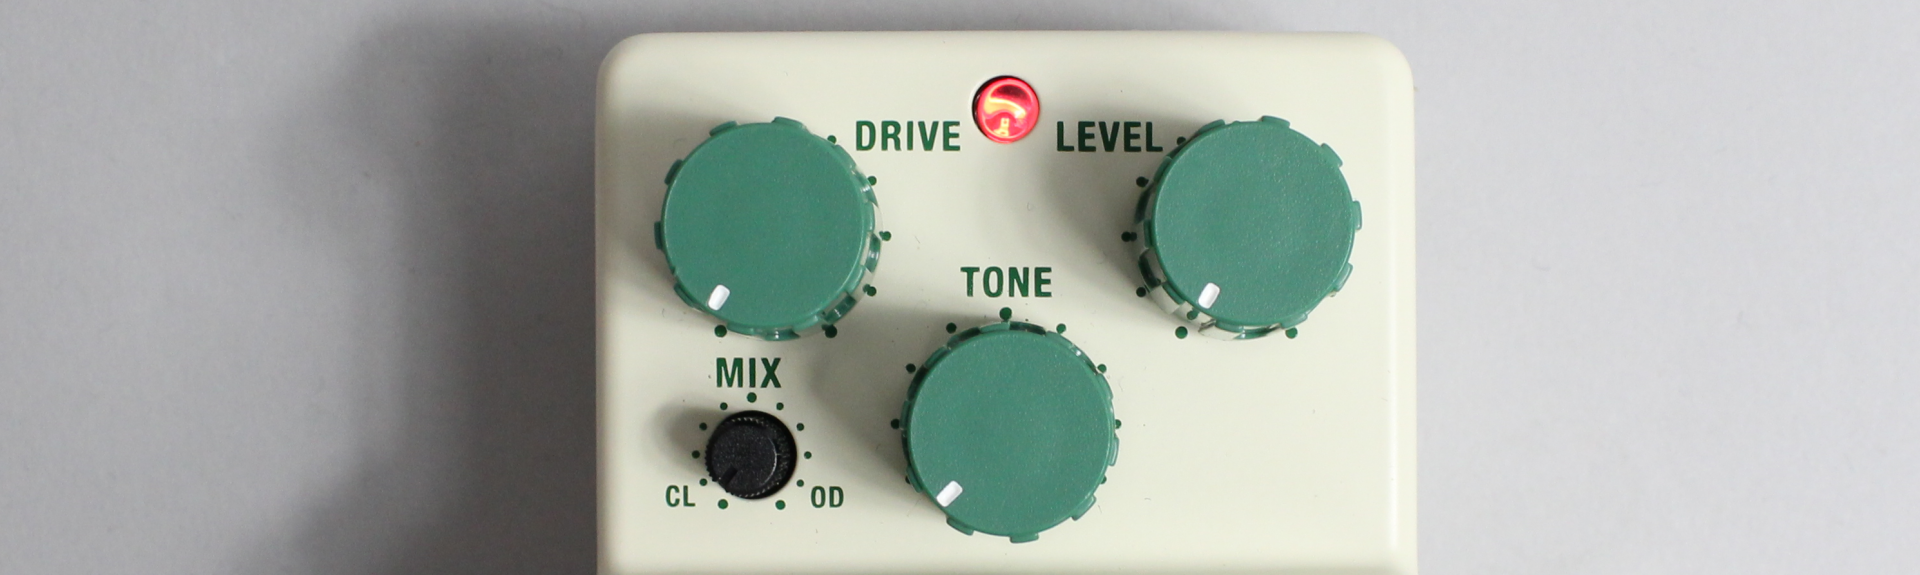 歪み⇔クリーンの音量バランス調整が可能 MIXコントロール・ノブ